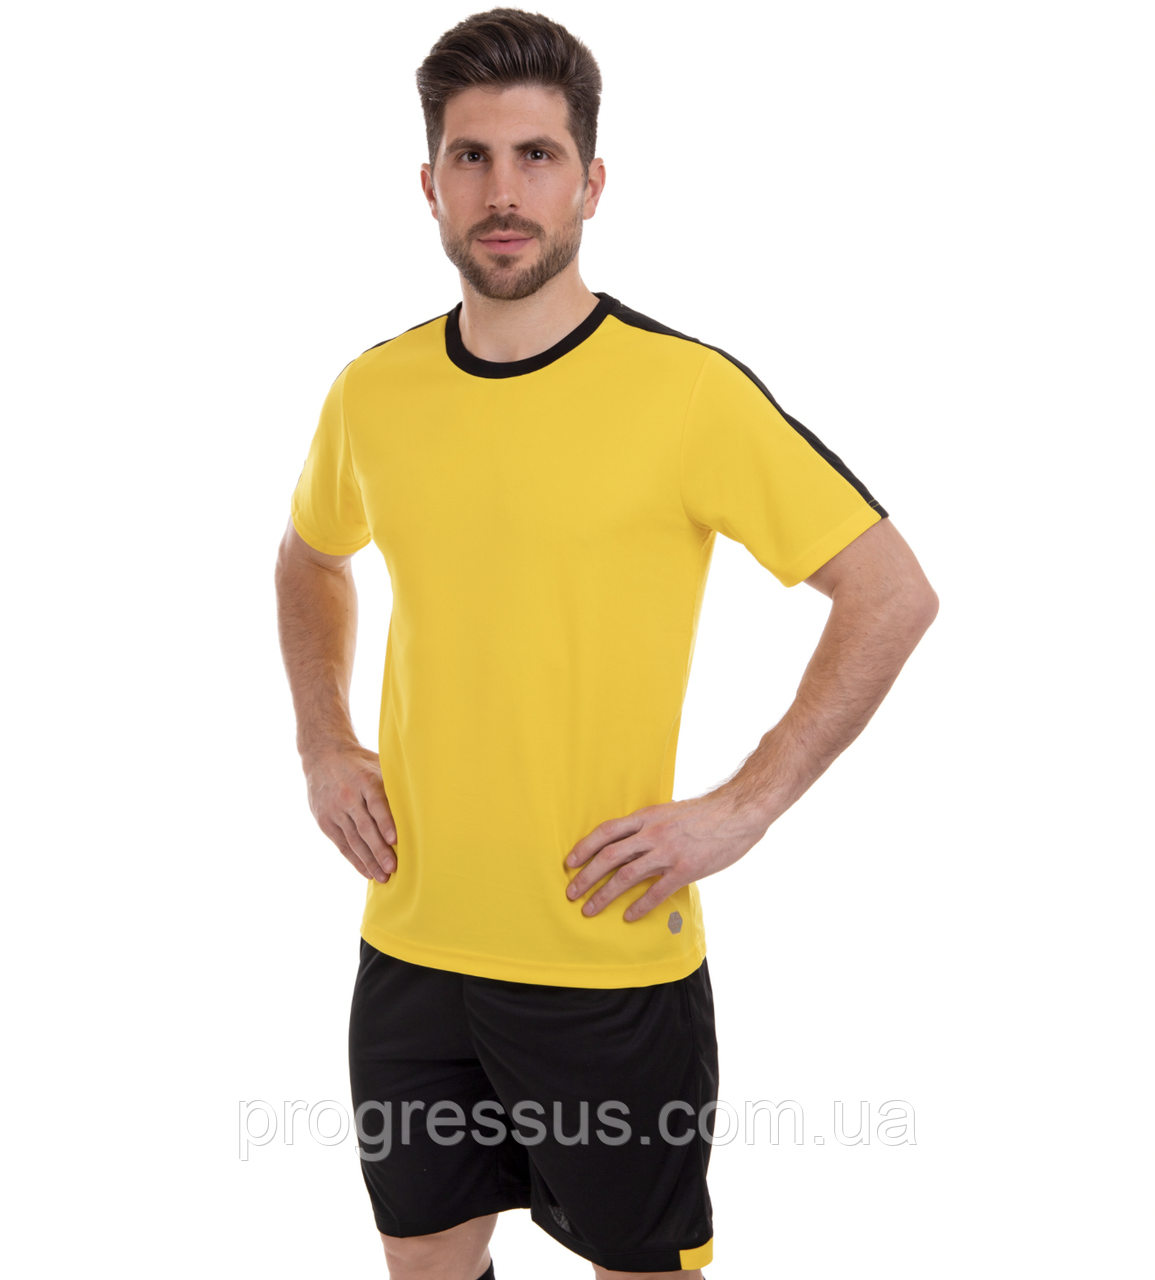 Футбольна форма чоловіча жовто-чорна/футбольна форма для команди/футбольне екіпірування